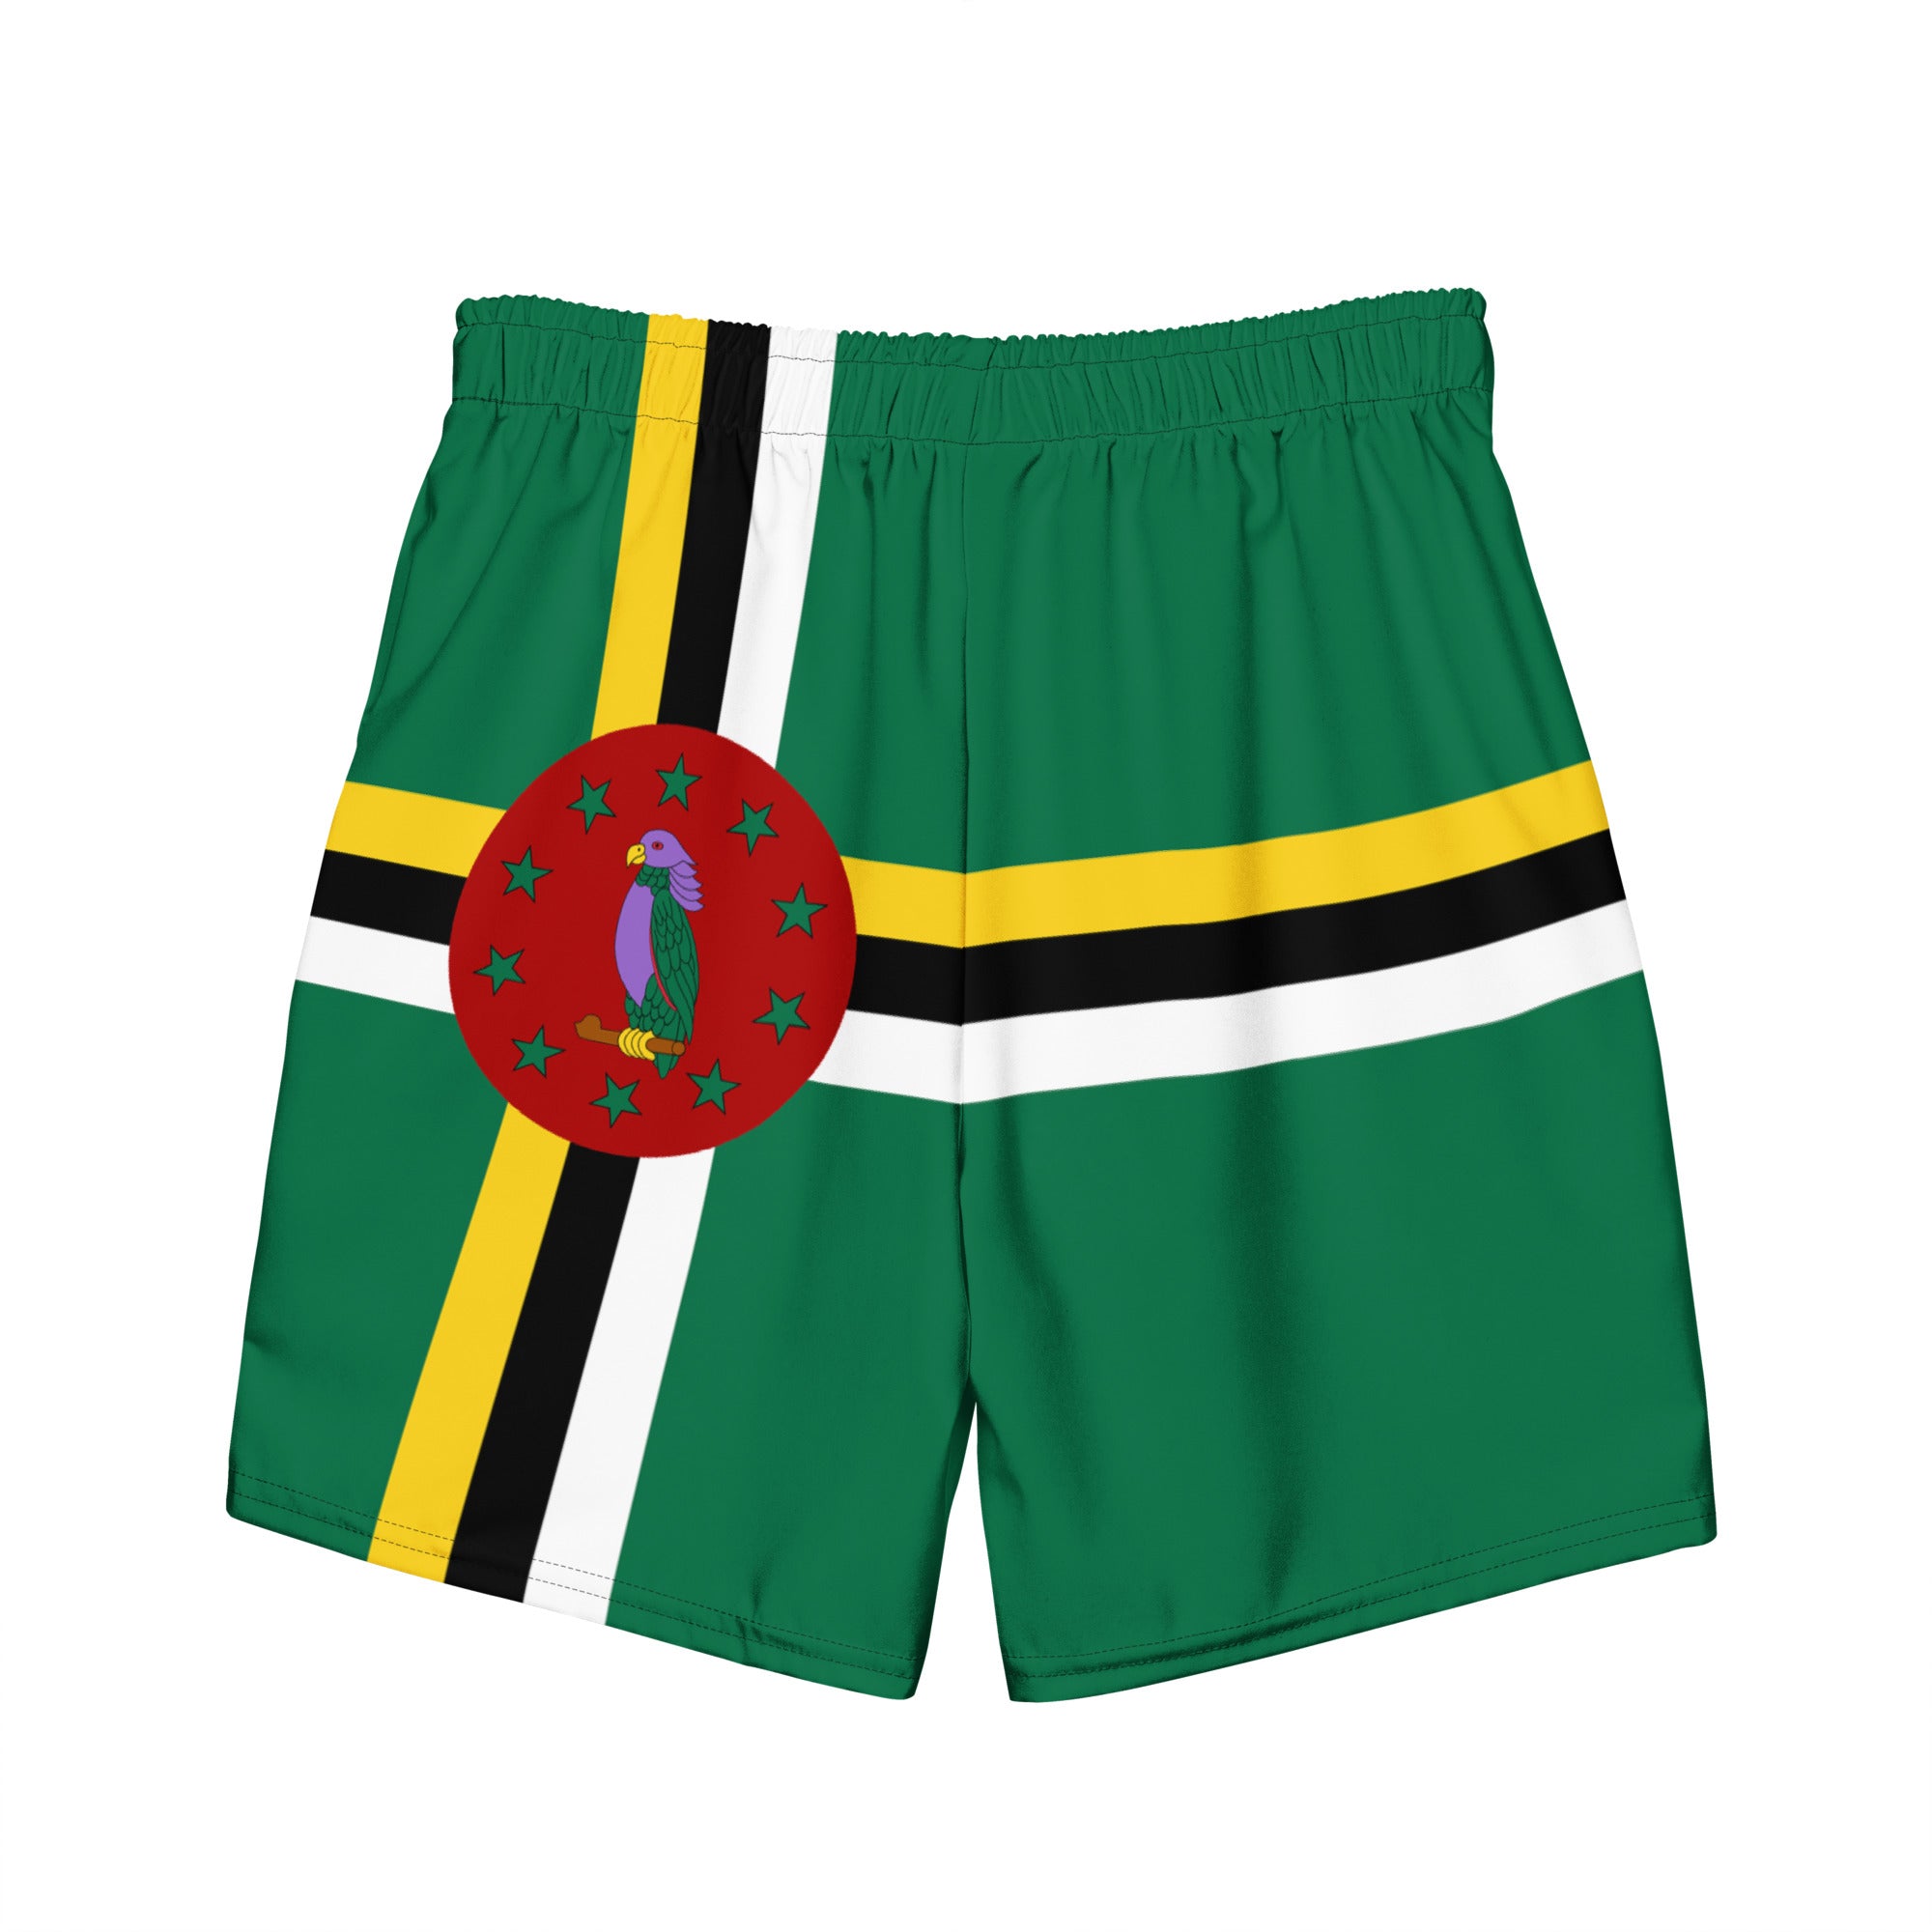 Dominica Flag - Men's swim trunks